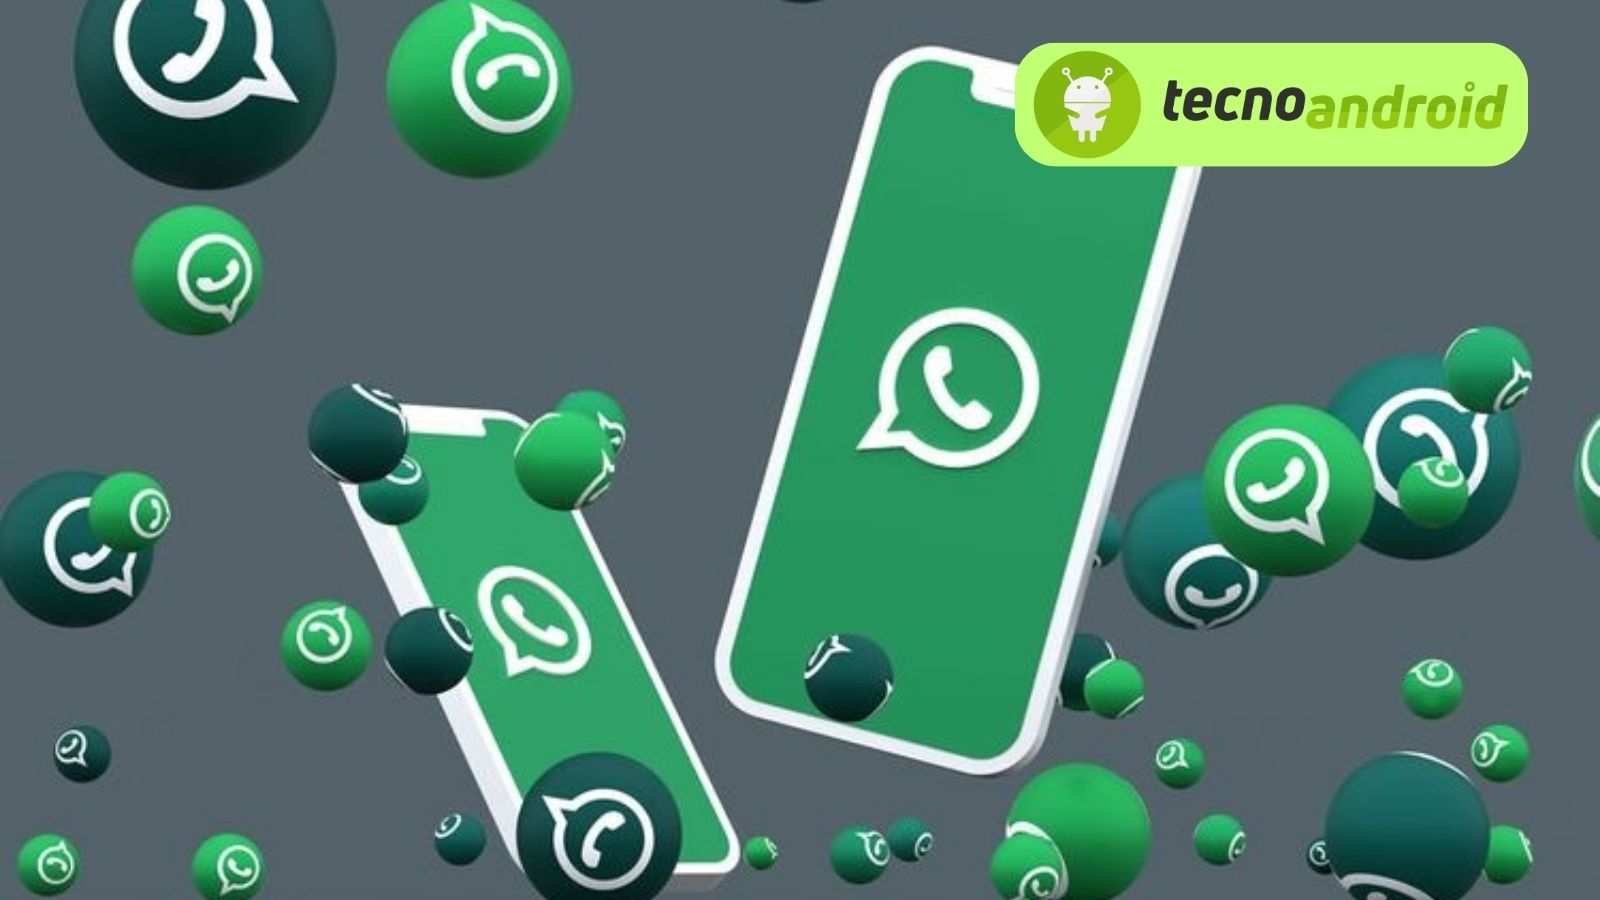 Trucco utilissimo per programmare messaggi su Whatsapp! 